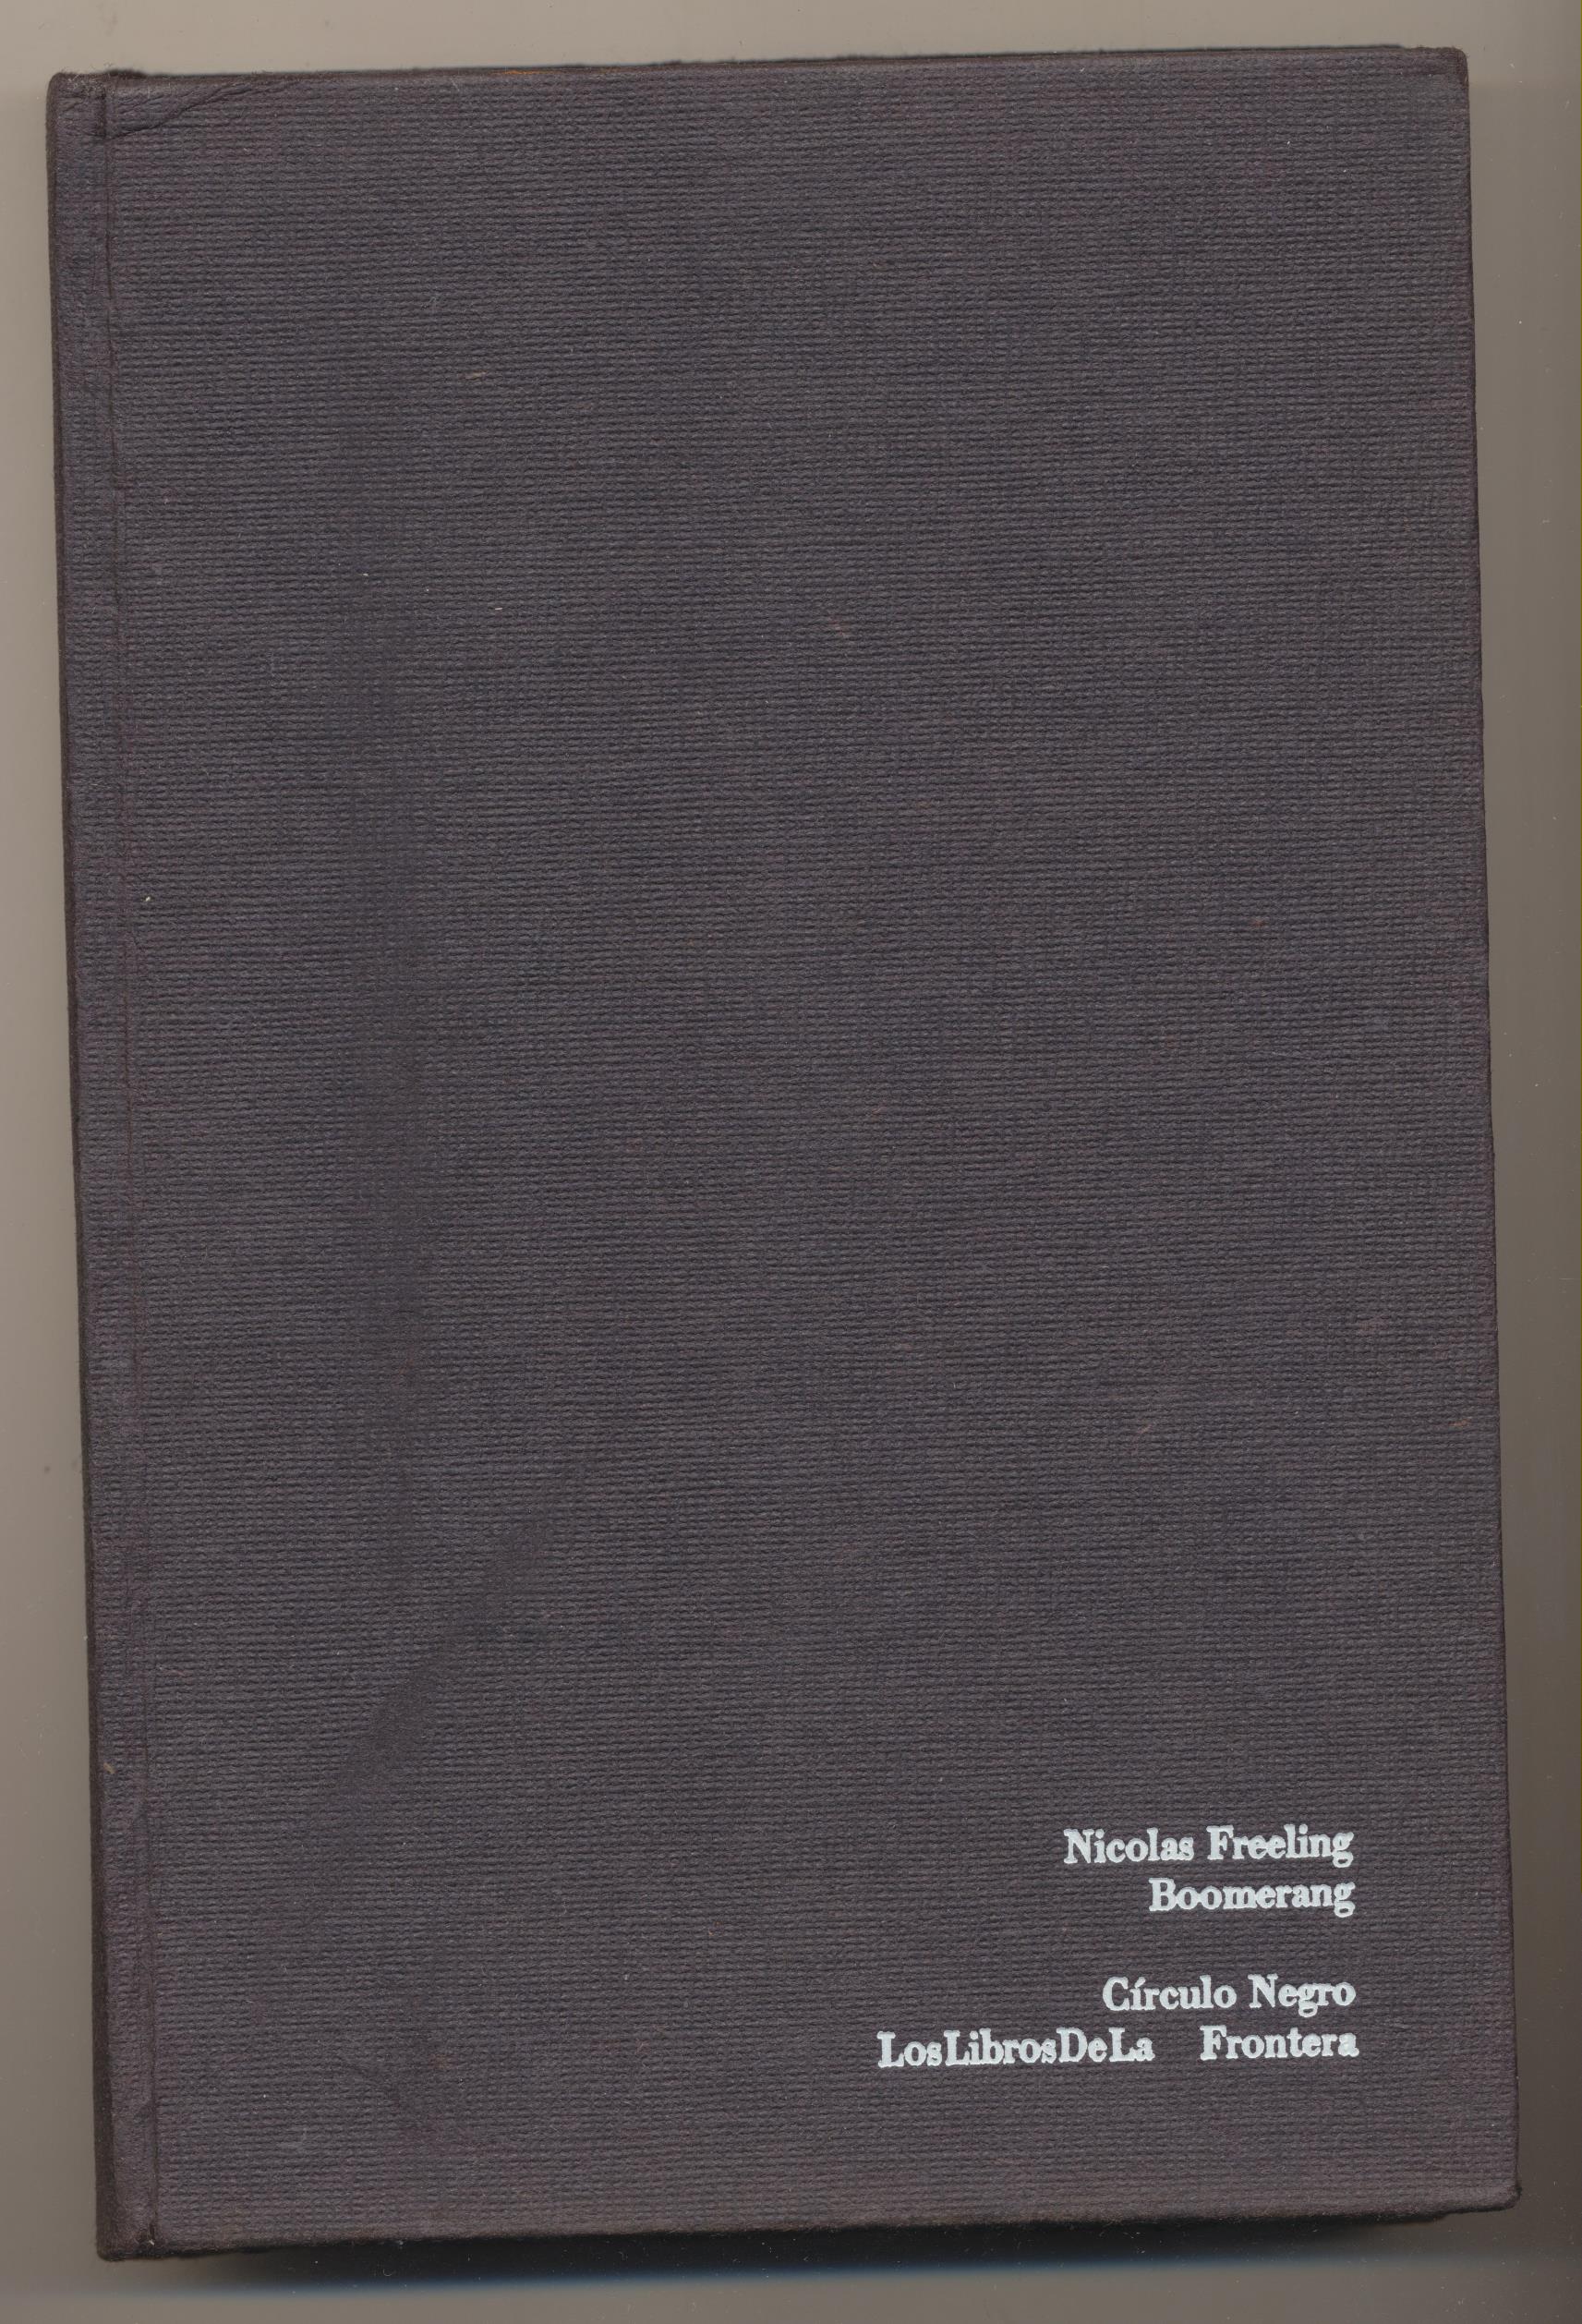 Nicolas Freeling. Boomerang. 1ª Edición Circulo Negro 1975